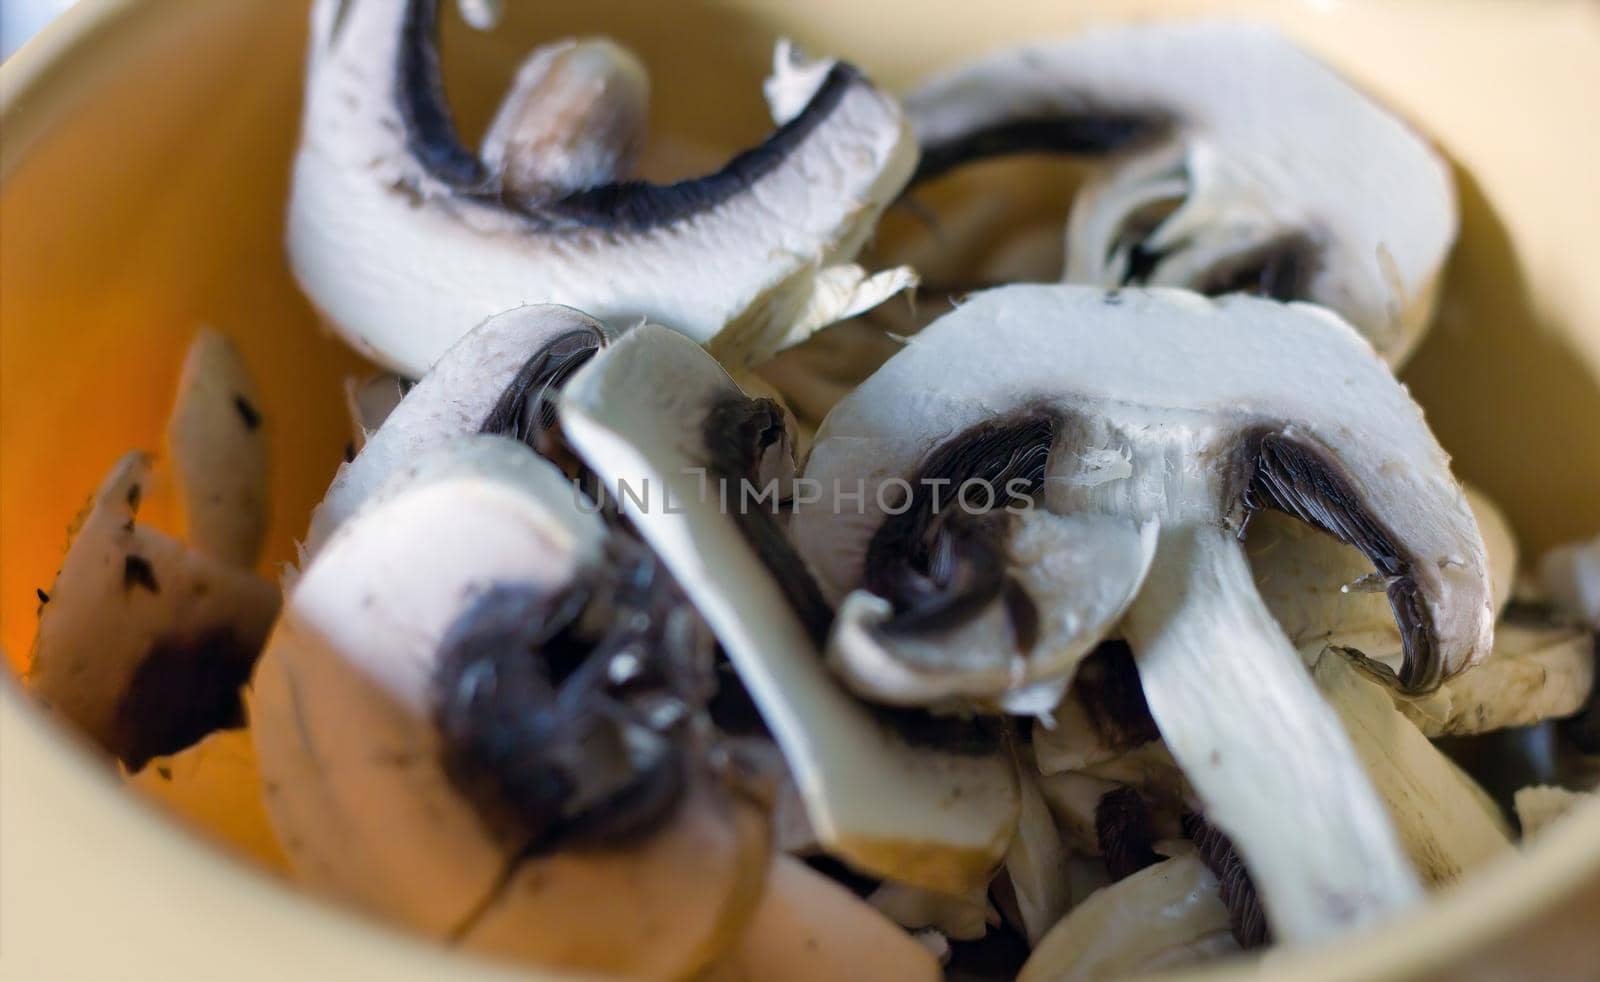 Fresh cut mushrooms in a package macro by arpanbhatia